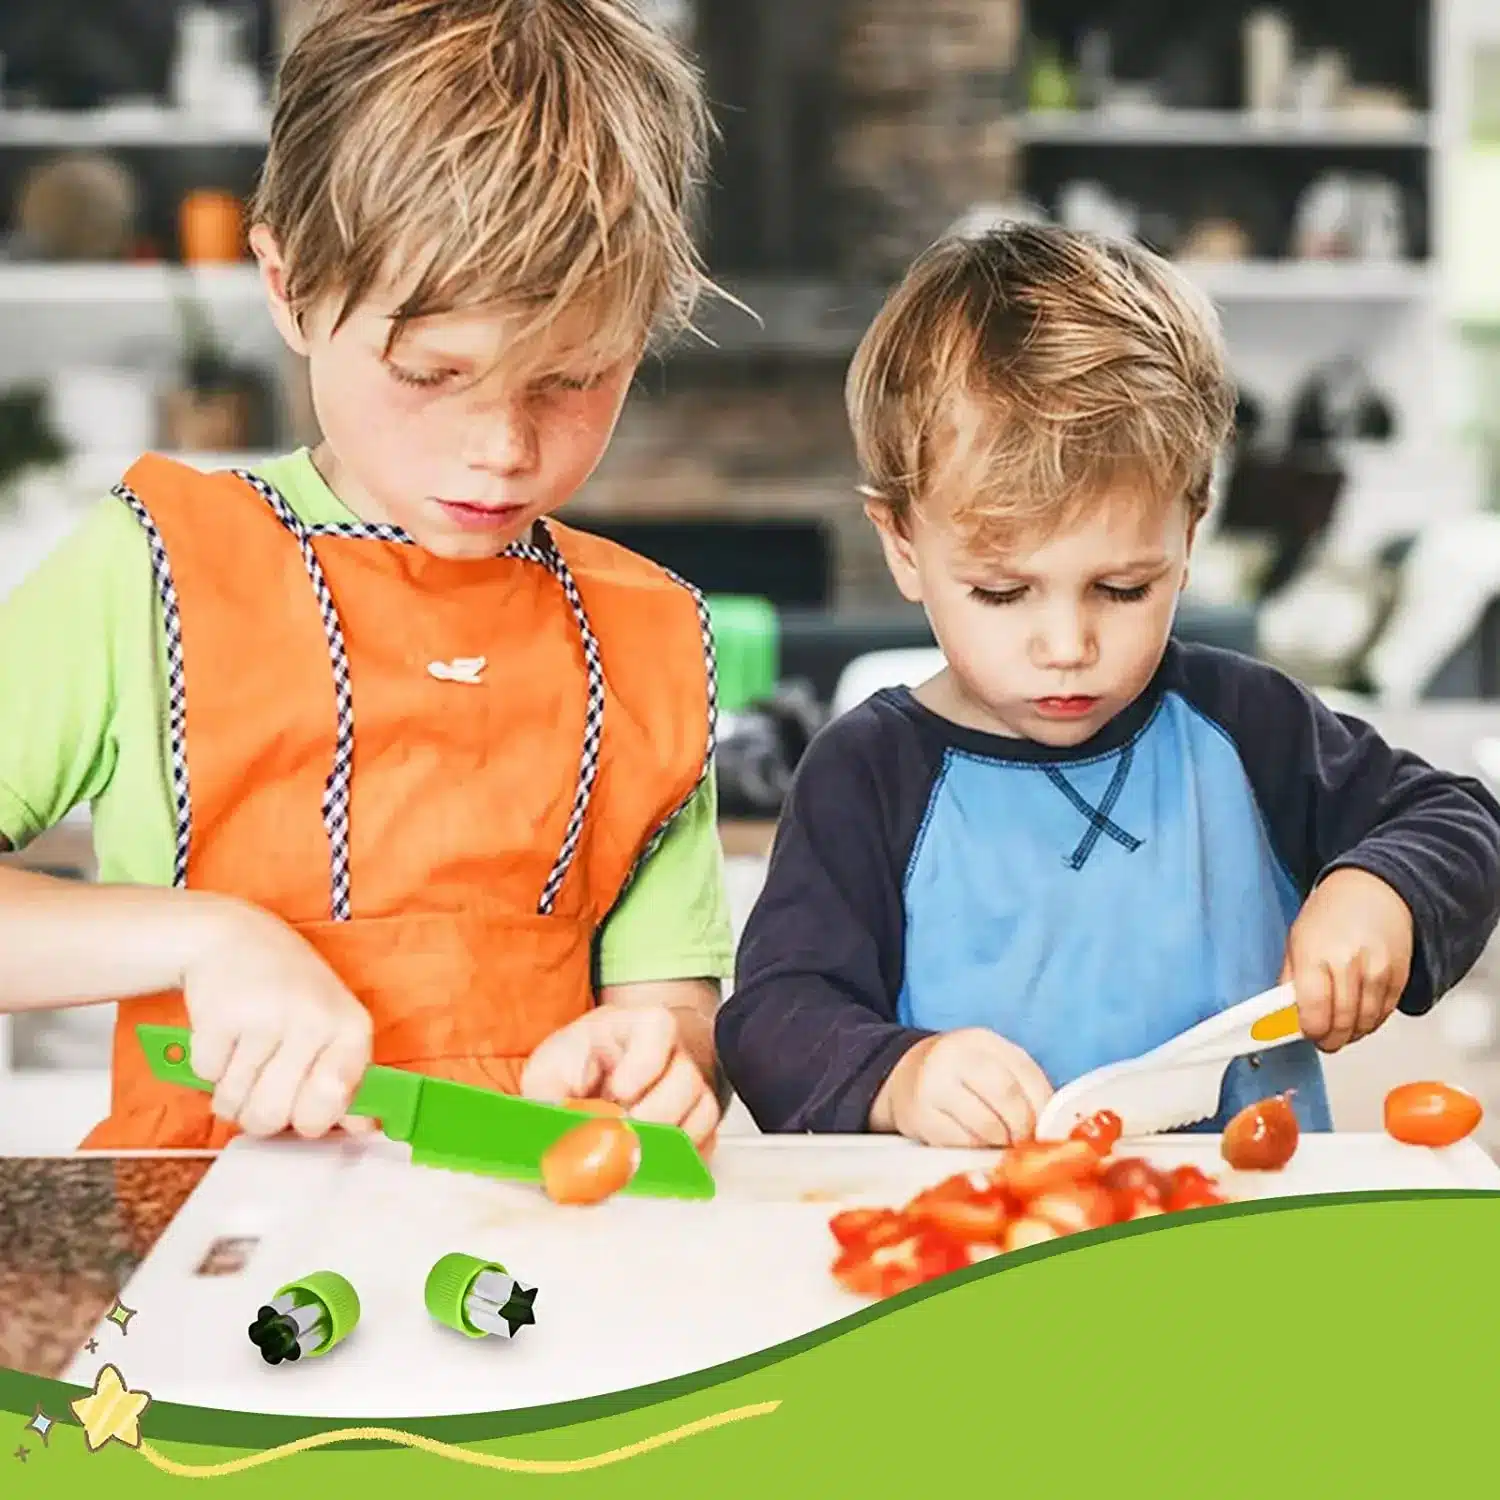 Ensemble de 9 couteaux de cuisine pour enfants, Couteau Montessori pour  enfants pour couper et cuire des fruits ou légumes,avec 545